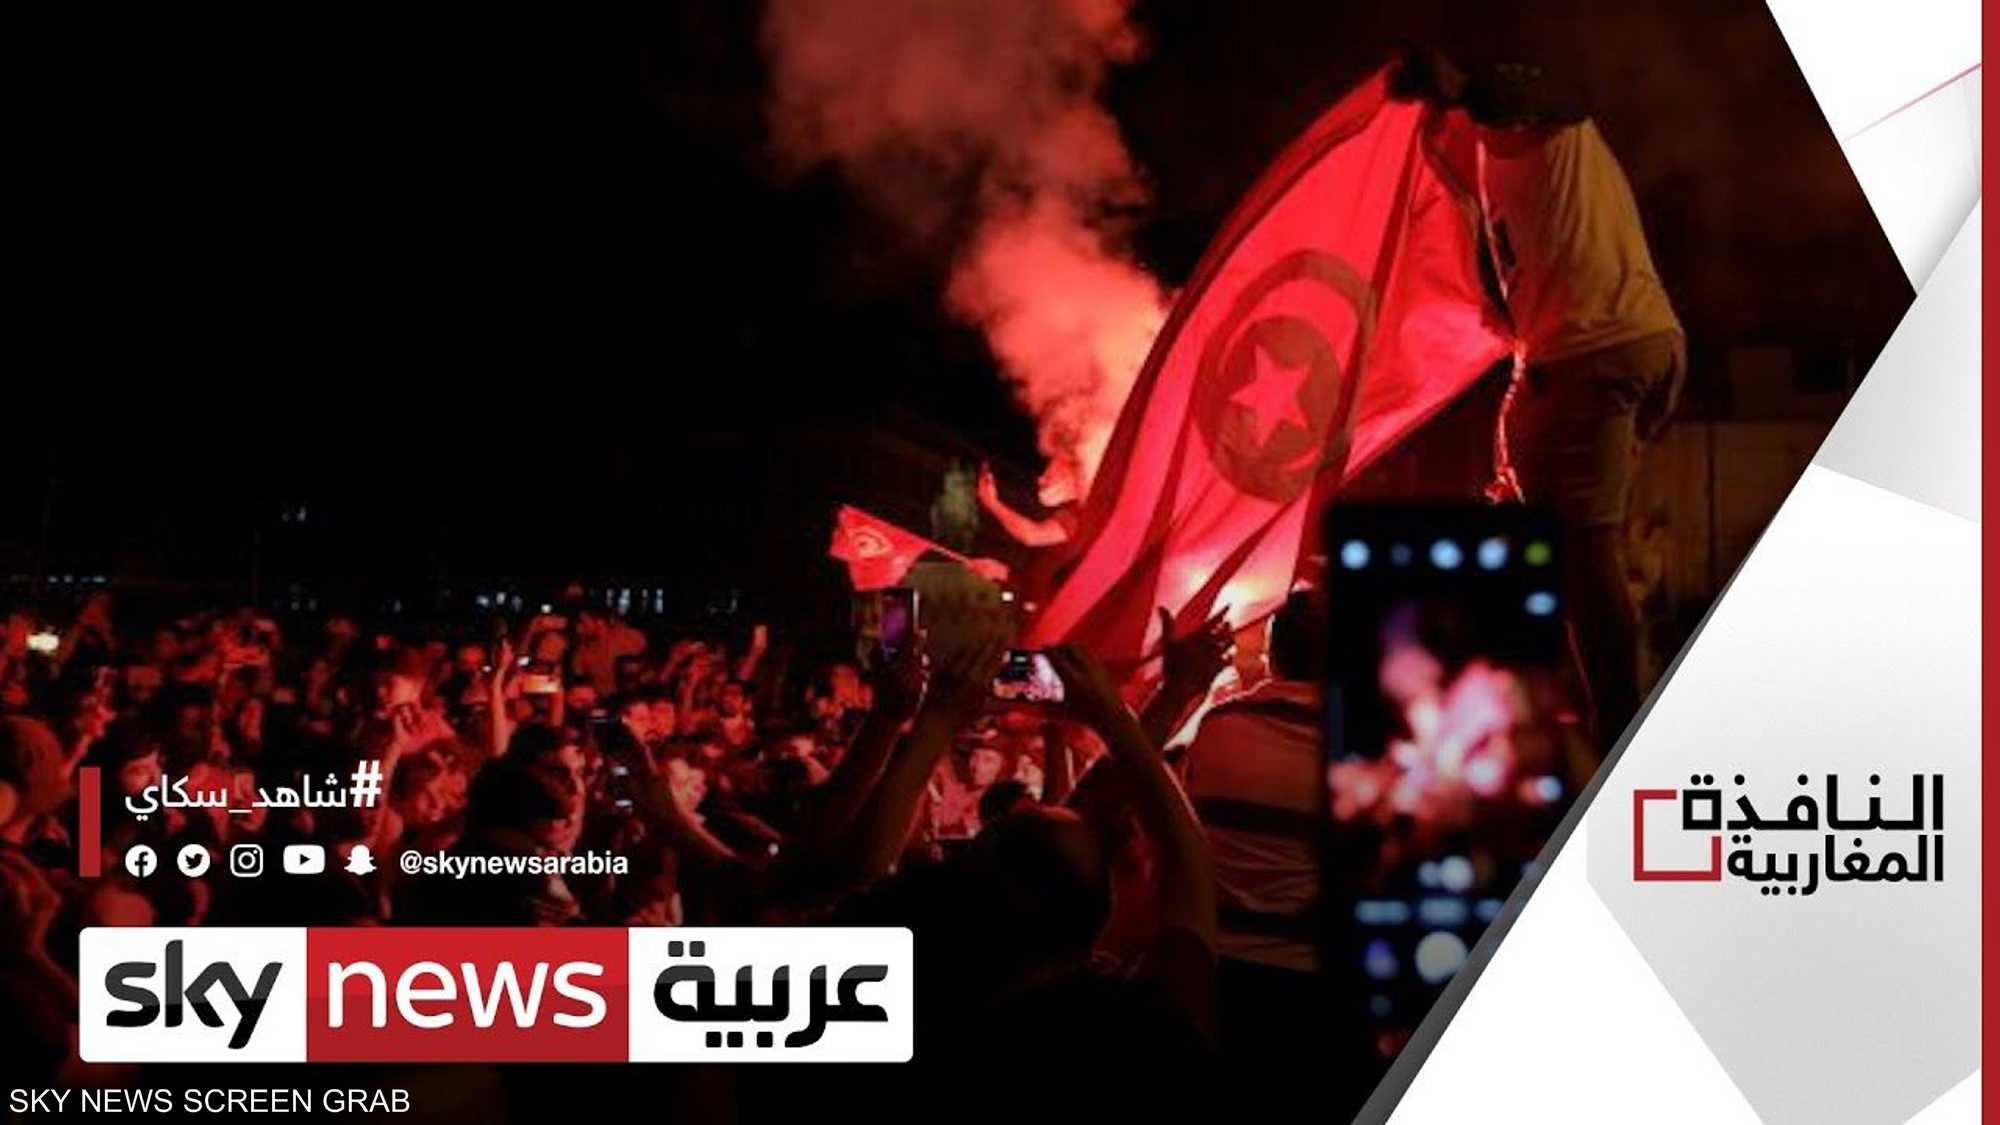 تونس.. الاتحاد العام للشغل يرفض التدخل الأجنبي بشؤون البلد